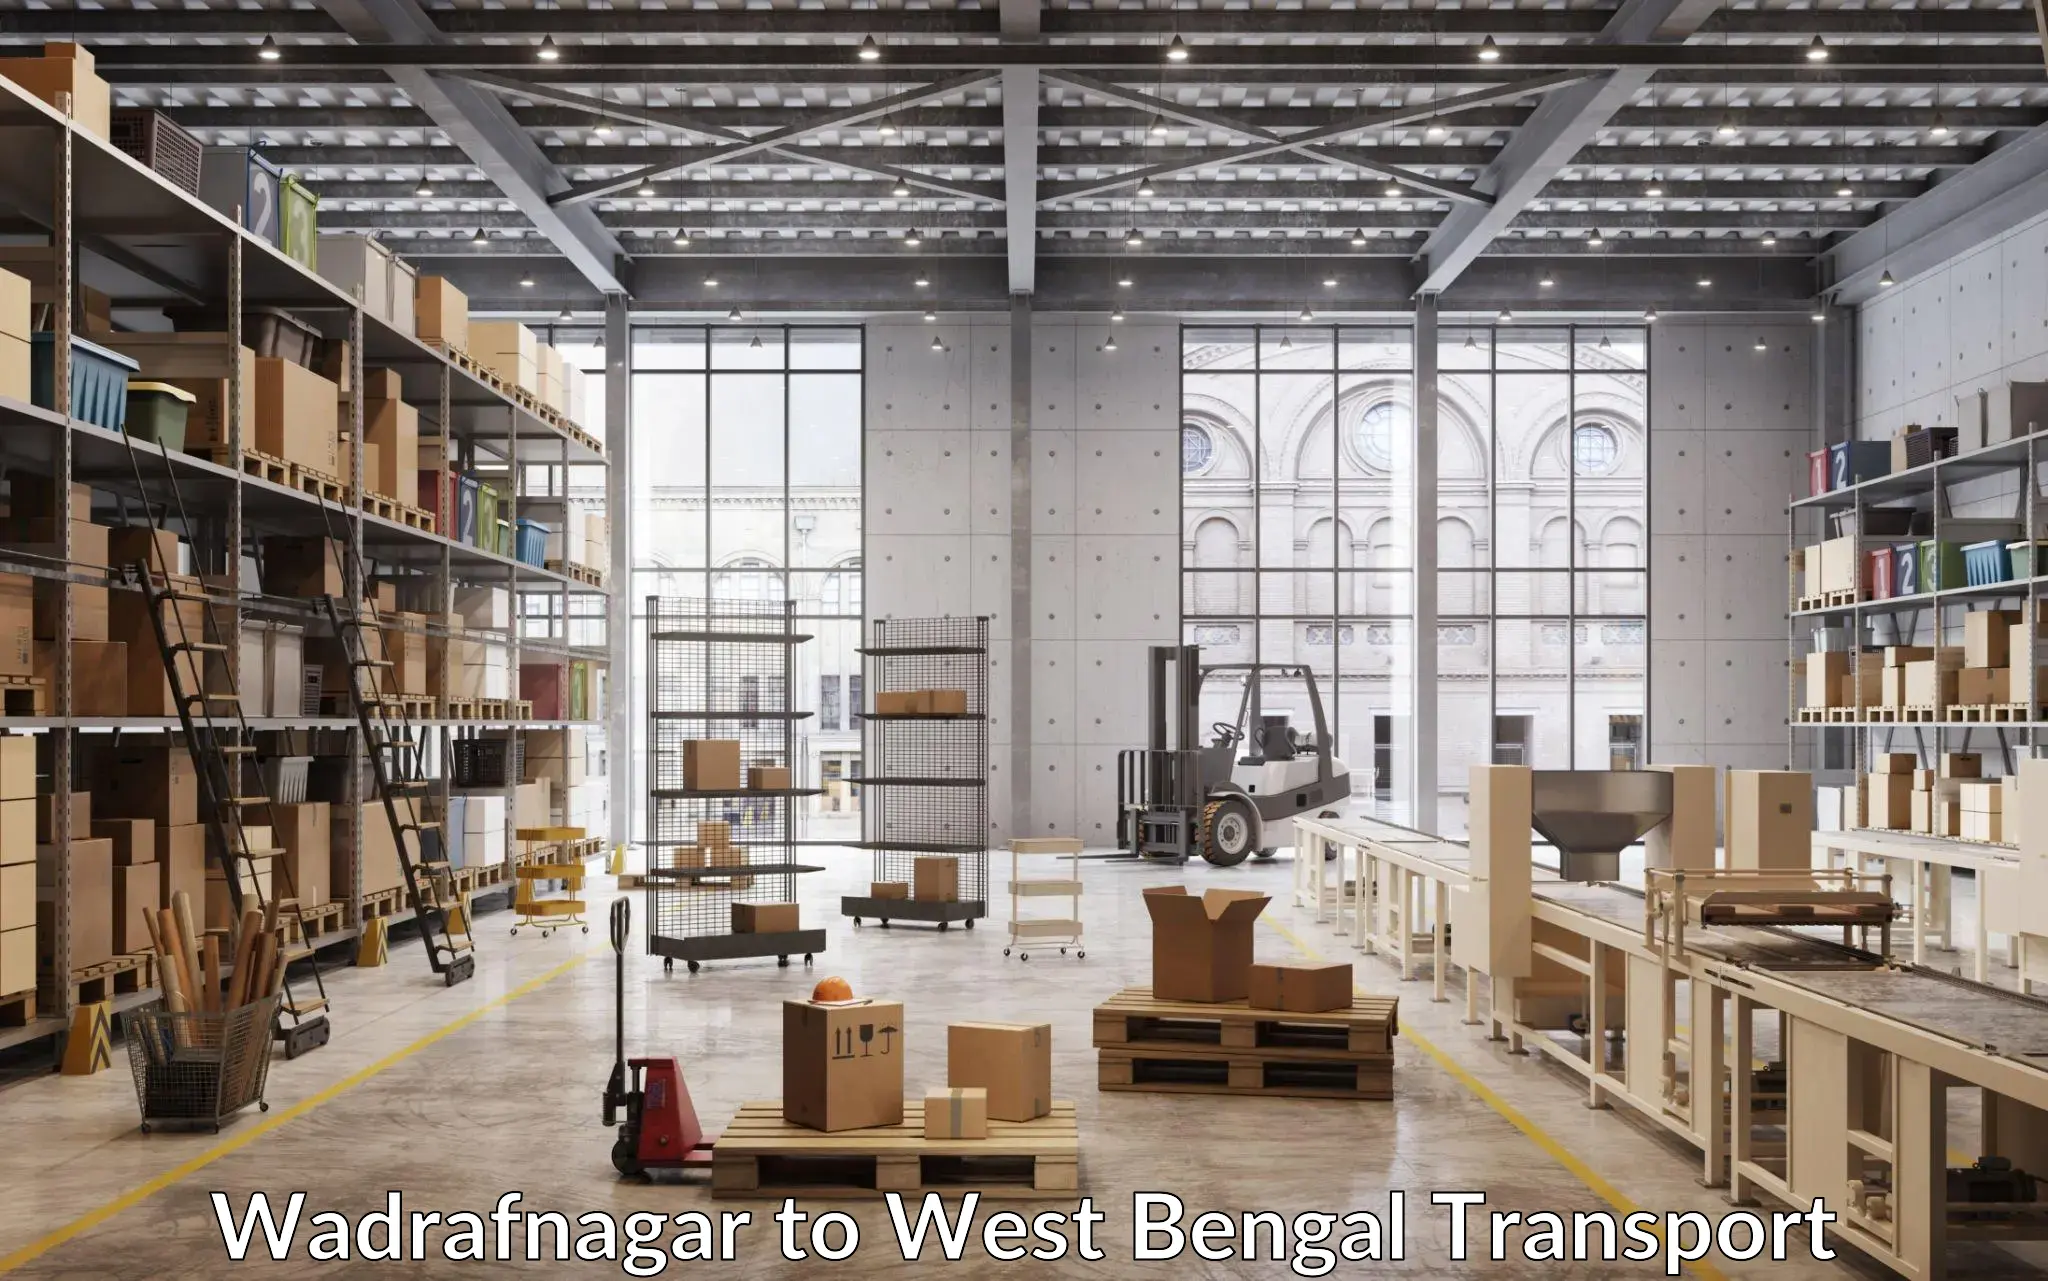 Daily transport service Wadrafnagar to Krishnanagar